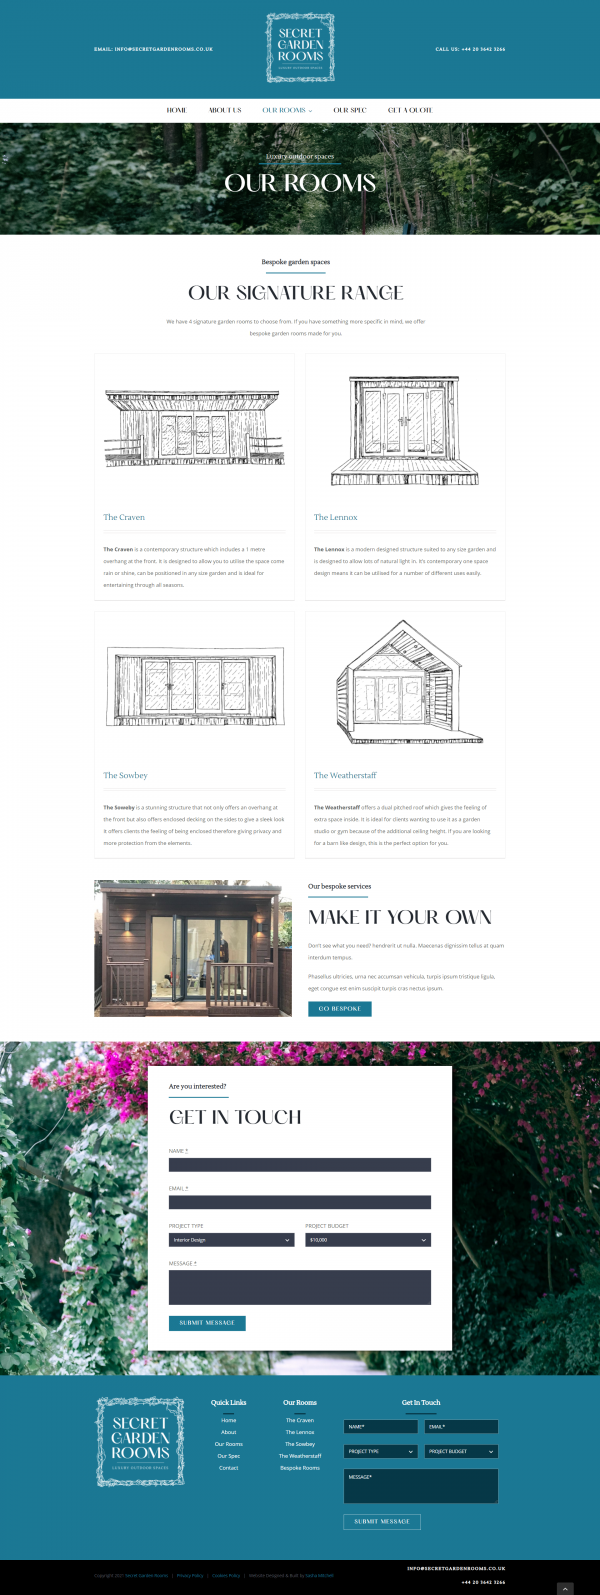 Secret Garden Room Website Design